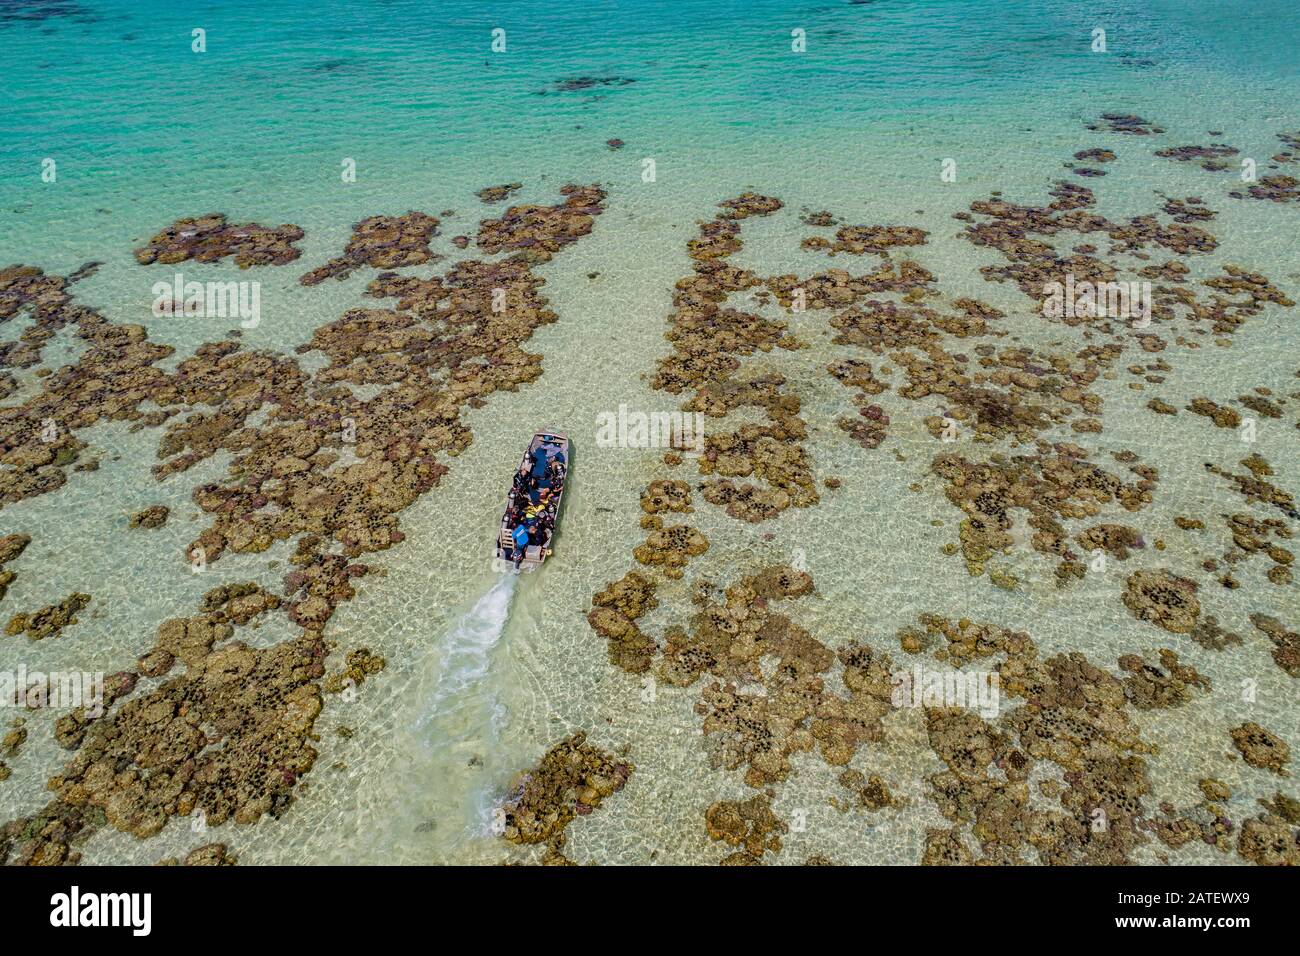 Luftbild der Tinnie Passage and Drop in Ghavutu Wharf, Ghavutu Island, Florida Islands und Sporttaucher im Boot, Solomon Islands, Solomon Sea Stockfoto